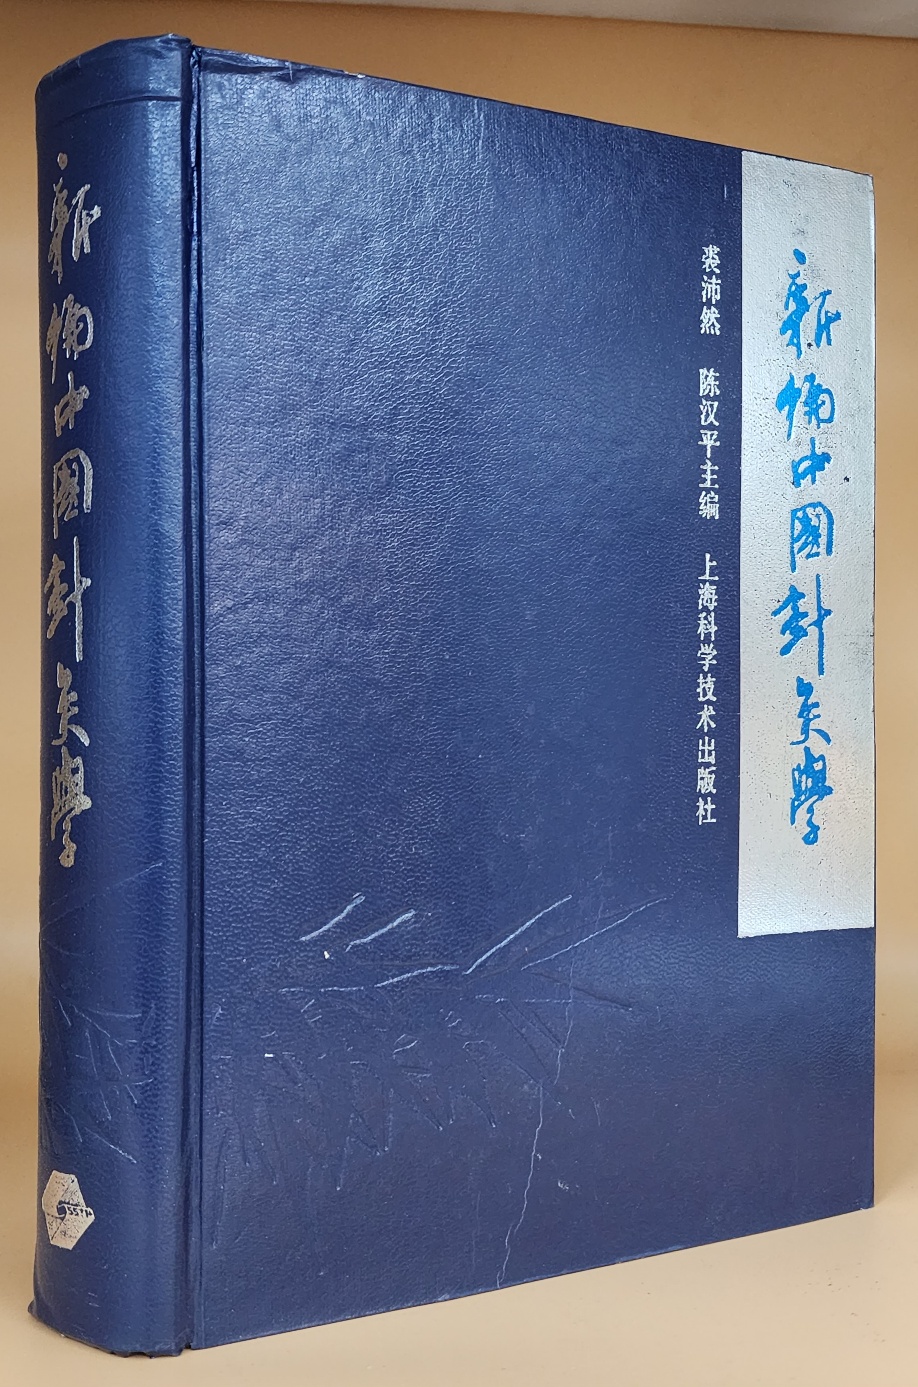 新编中国针灸学(신편중국침구학) 중문간체자